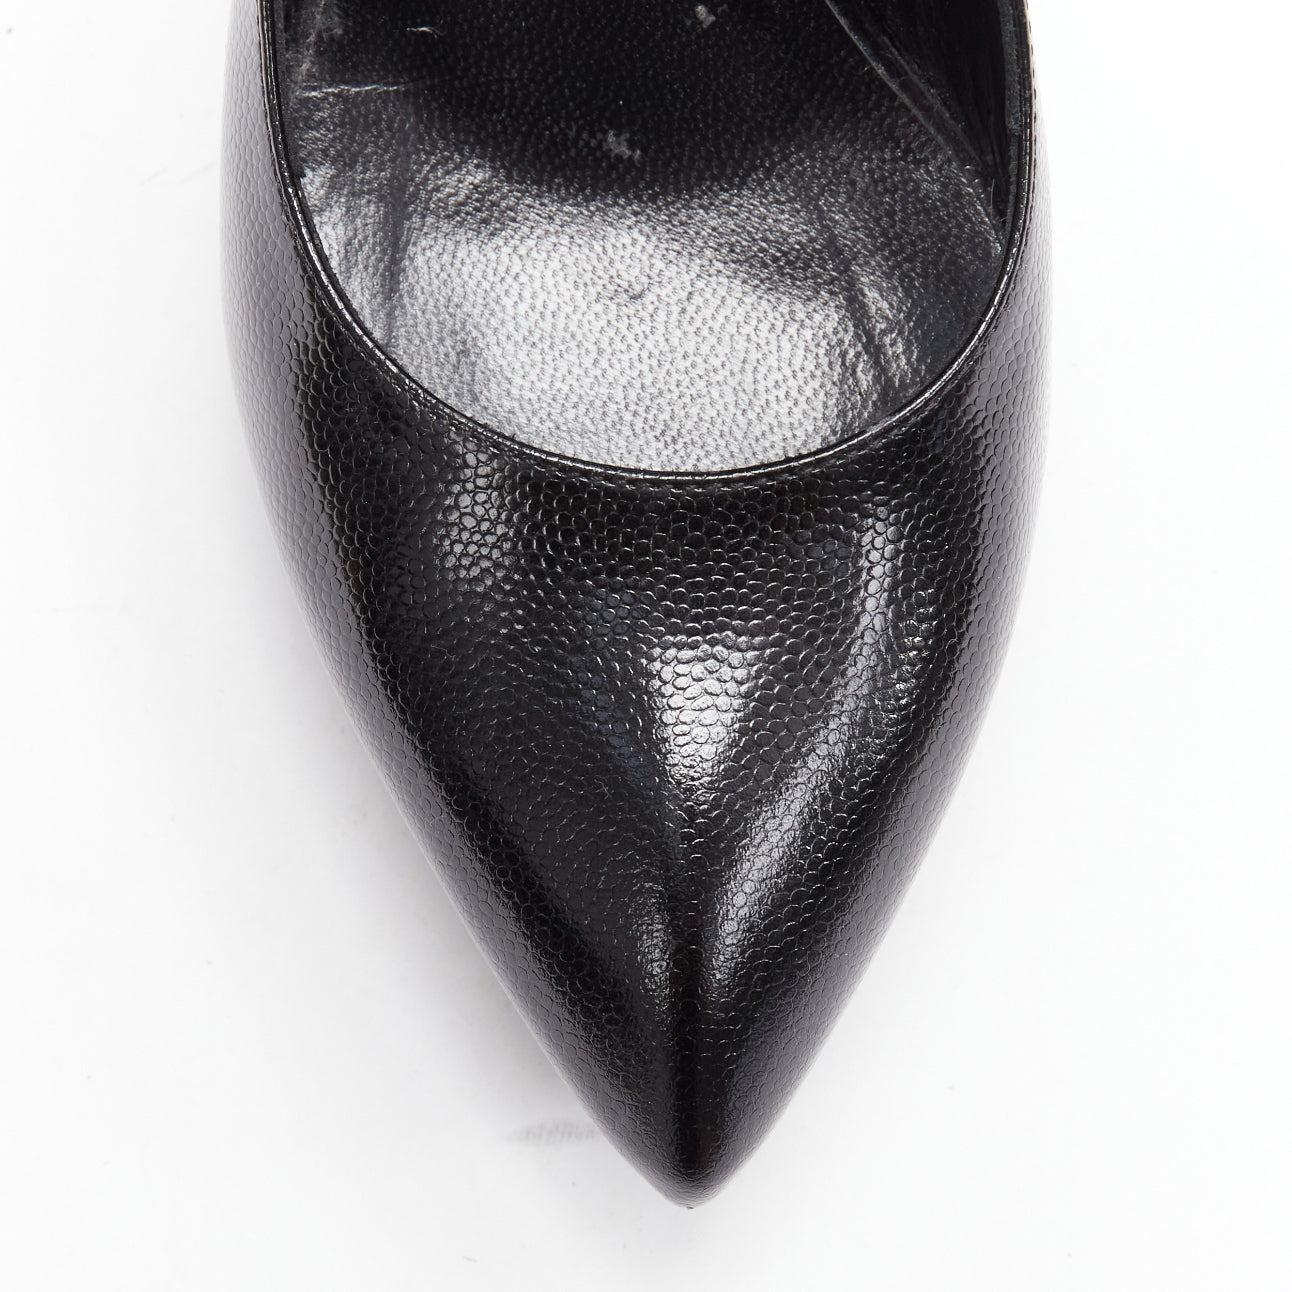 SAINT LAURENT black grained leather point toe platform pumps EU37 For Sale 2